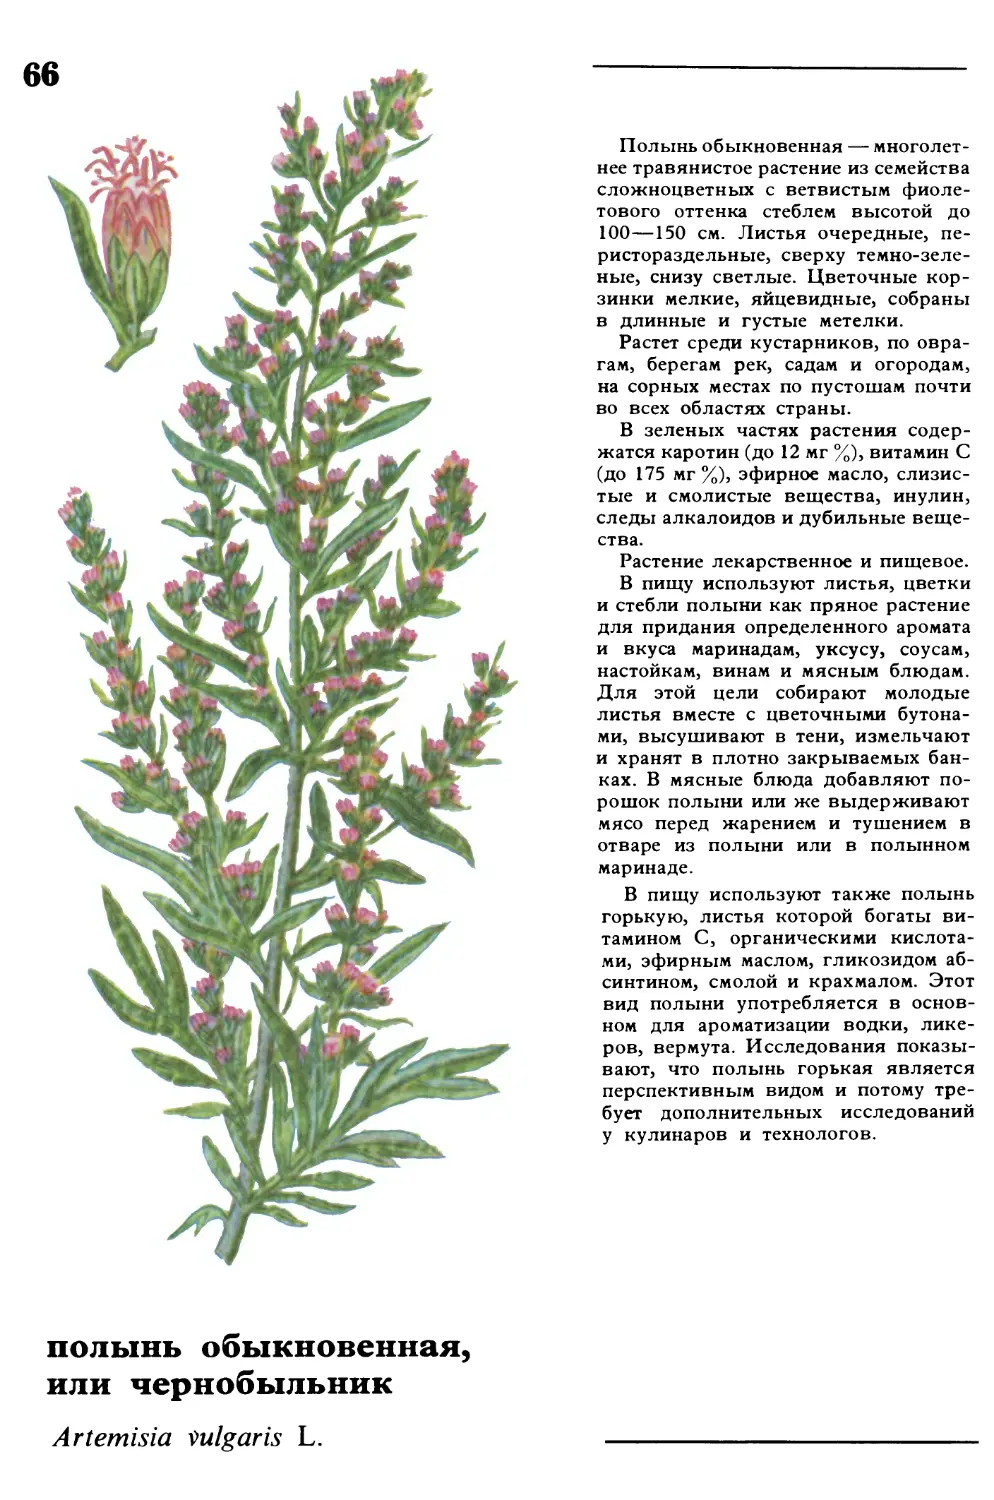 Полынь
полынь обыкновенная, или чернобыльник
Artemisia vulgaris L.